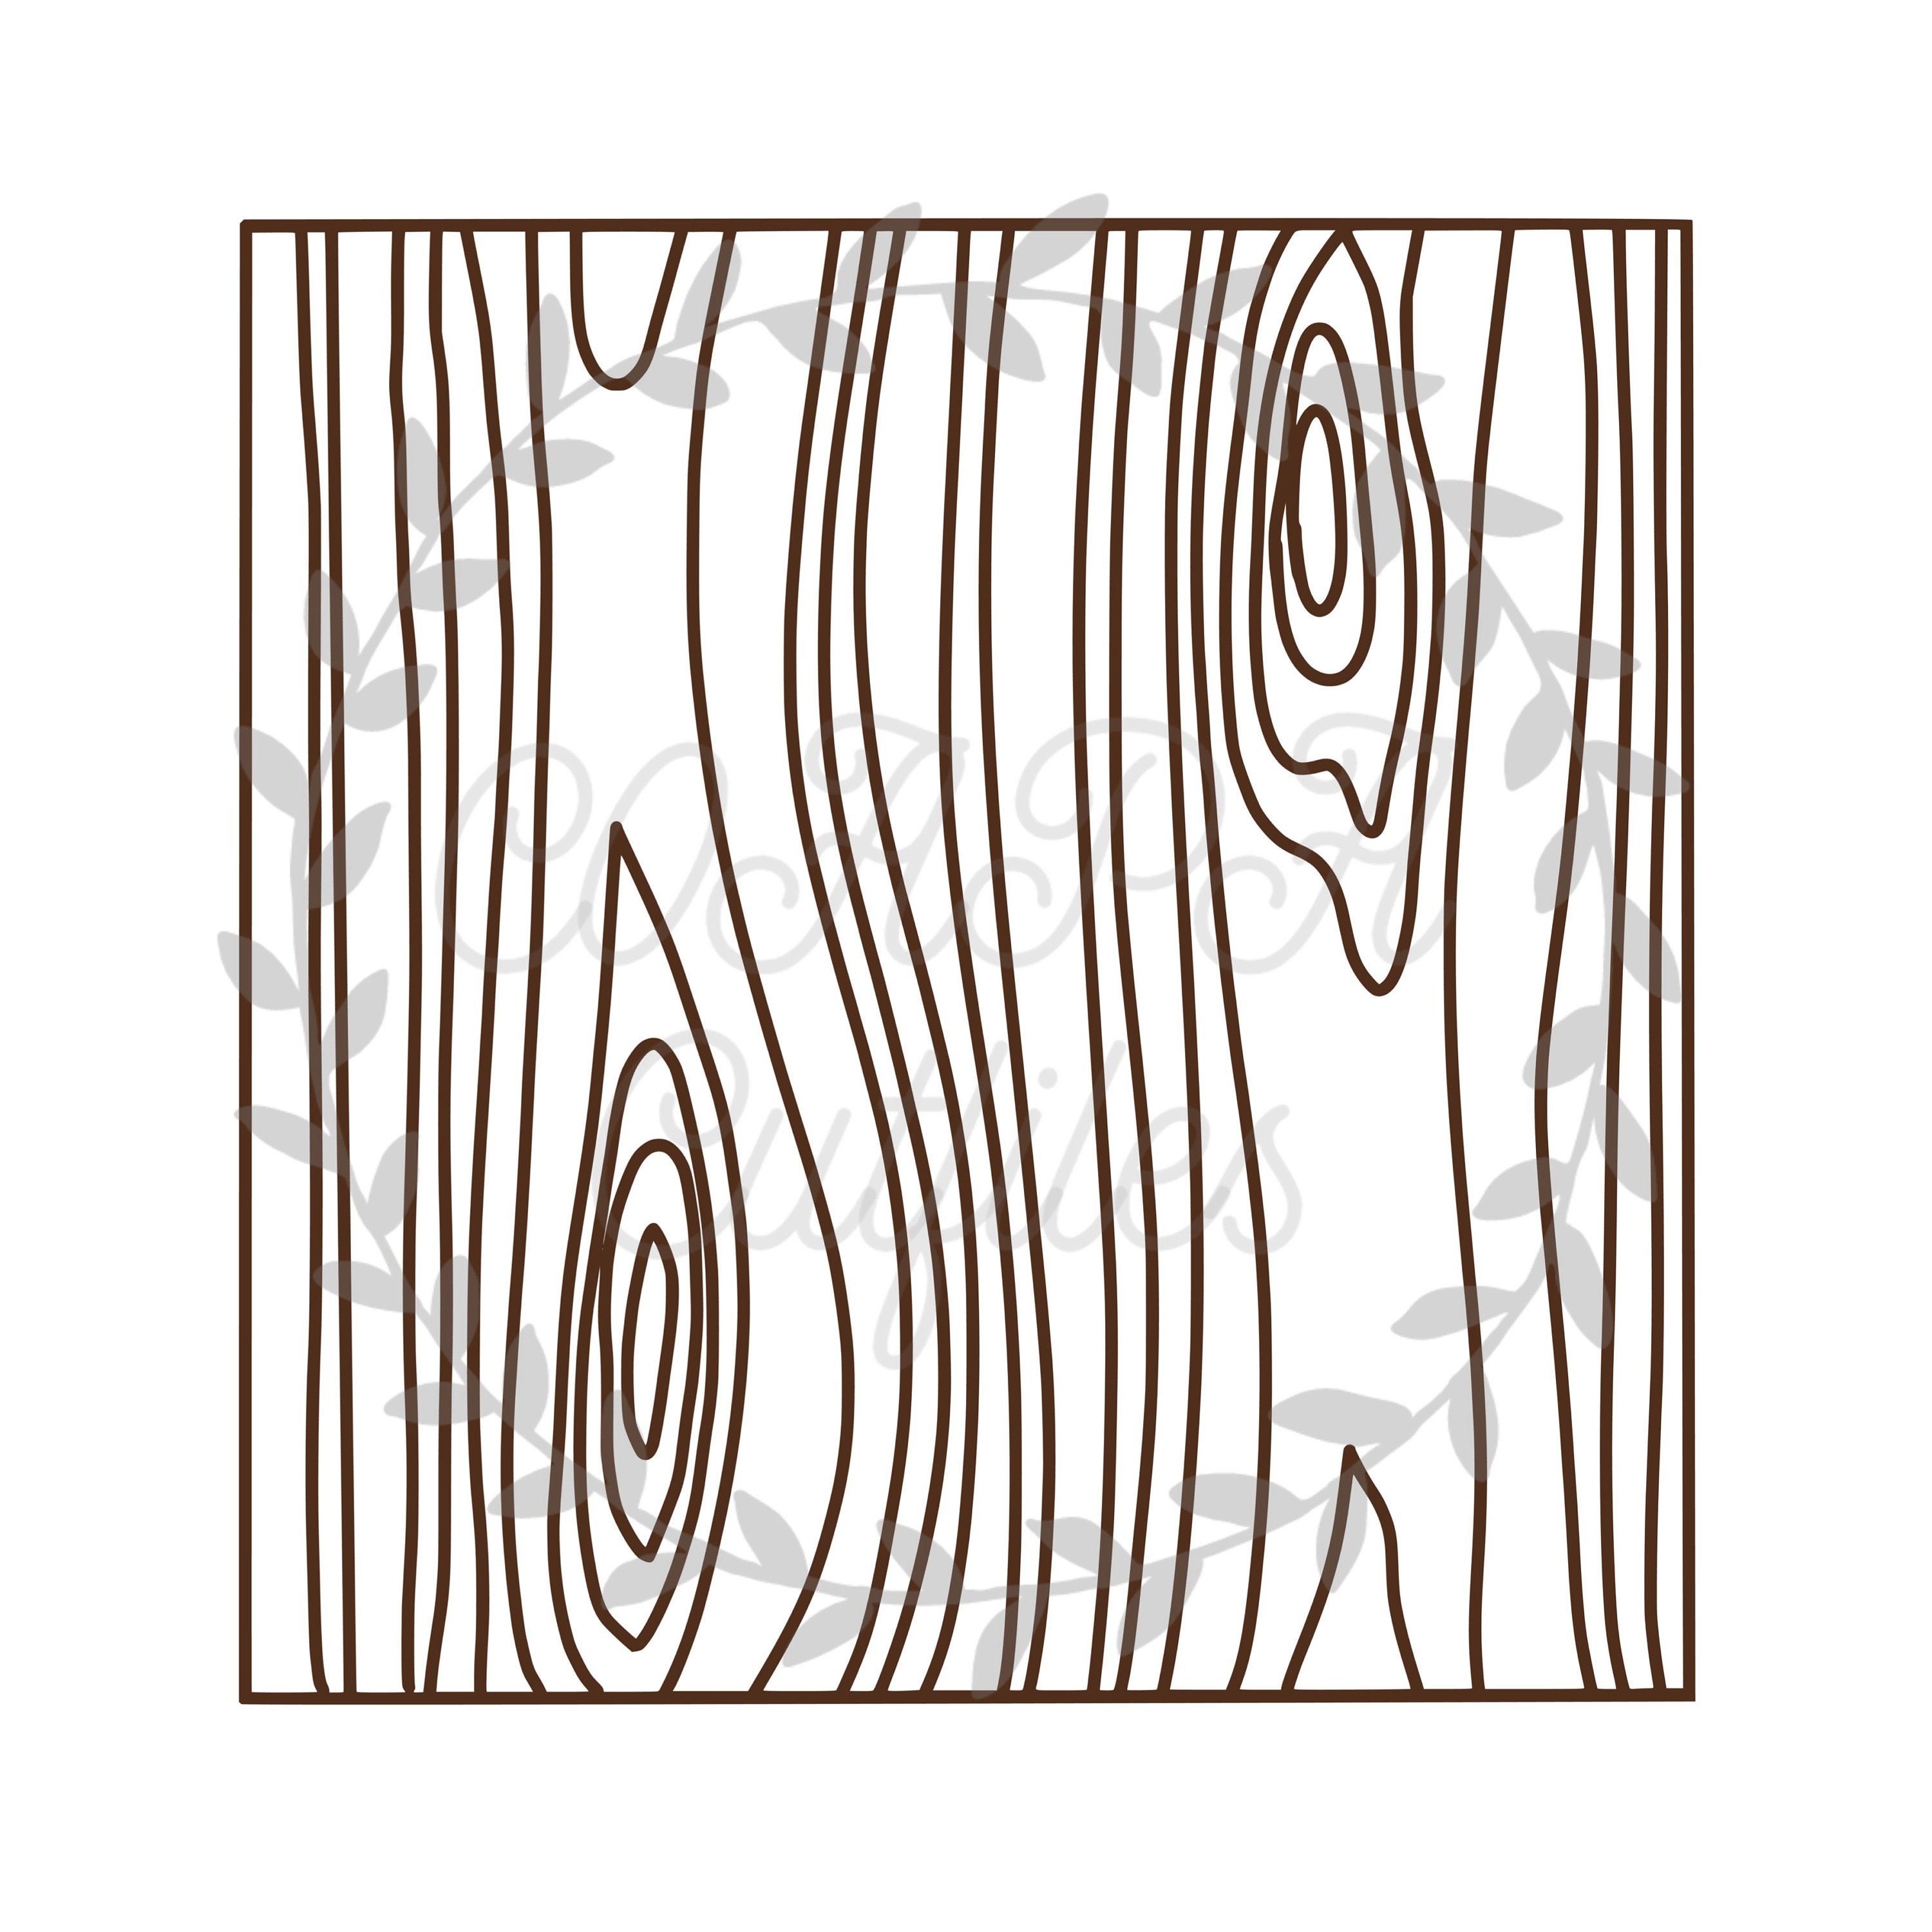 Bạn có muốn tìm kiếm tệp cắt hình nền gỗ để trang trí cho các dự án của mình không? Hãy khám phá hình ảnh với tệp cắt hình nền gỗ cut file chất lượng này. Bấm vào hình ảnh để tìm hiểu thêm nhé!